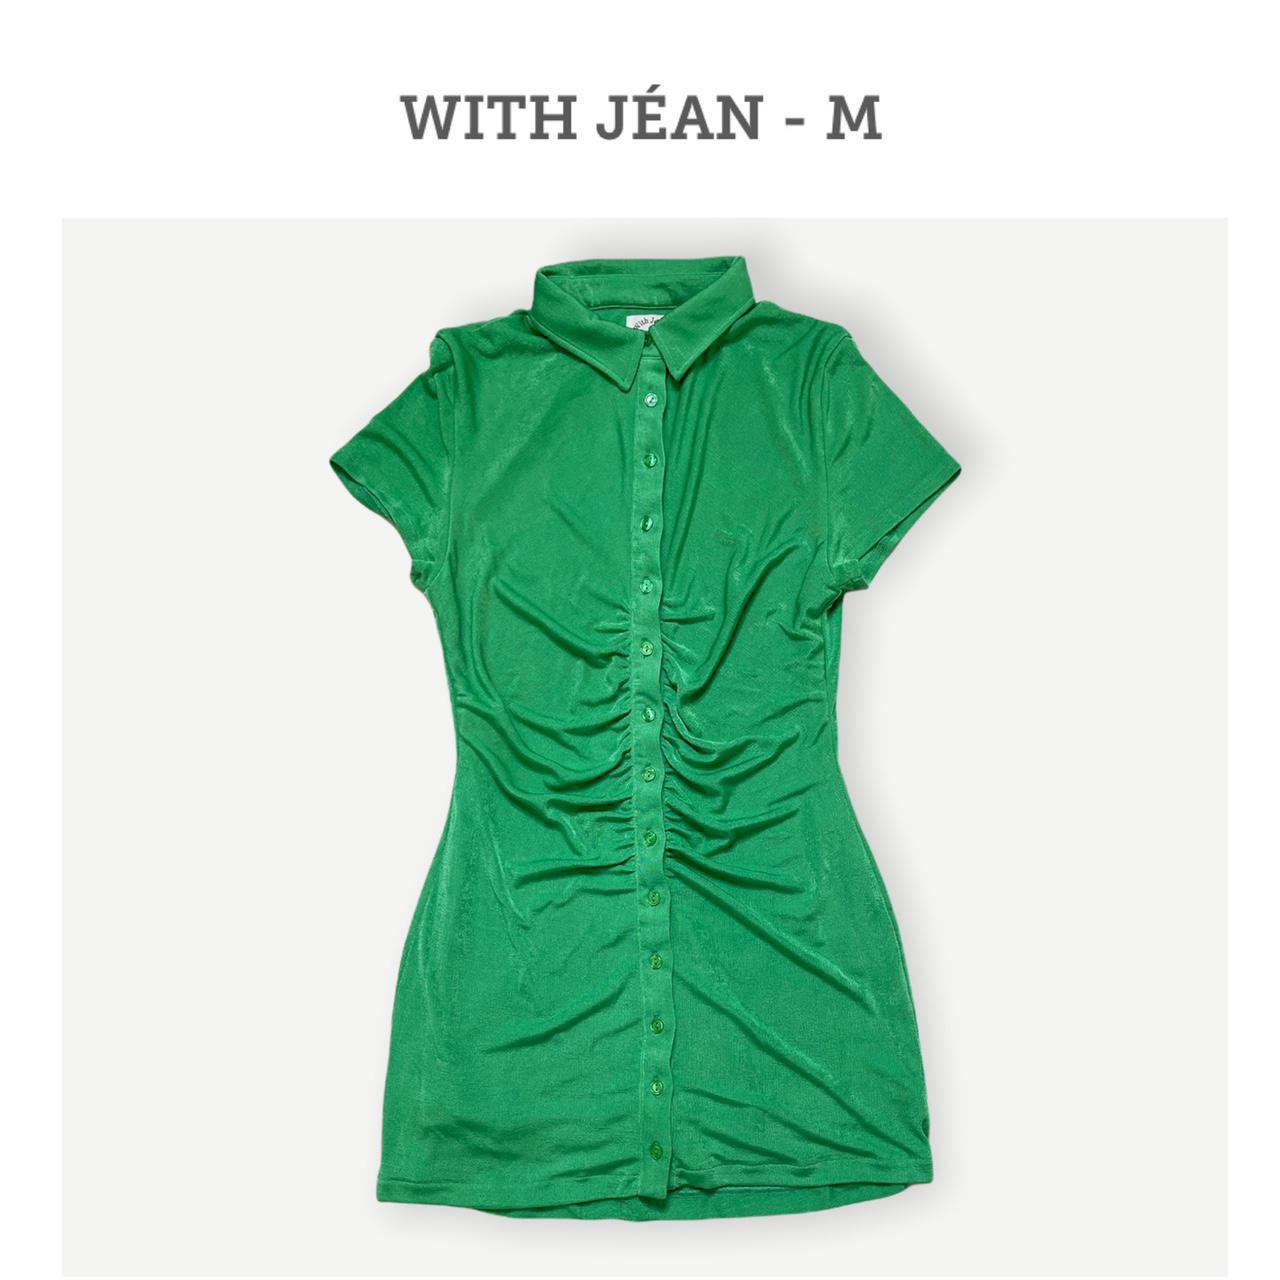 With Jéan Women's Green Dress